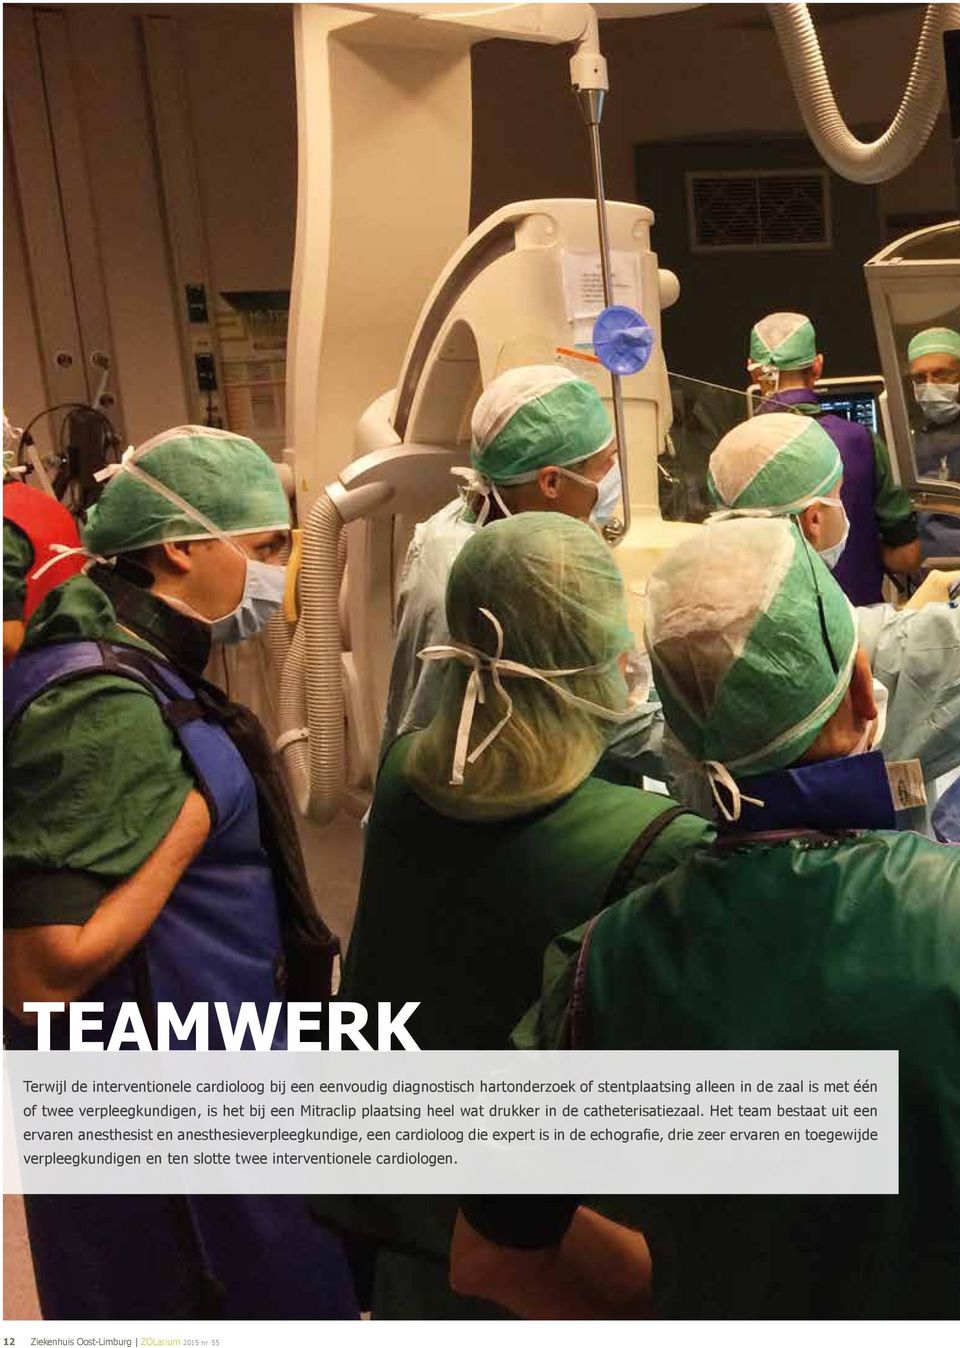 Het team bestaat uit een ervaren anesthesist en anesthesieverpleegkundige, een cardioloog die expert is in de echografie, drie